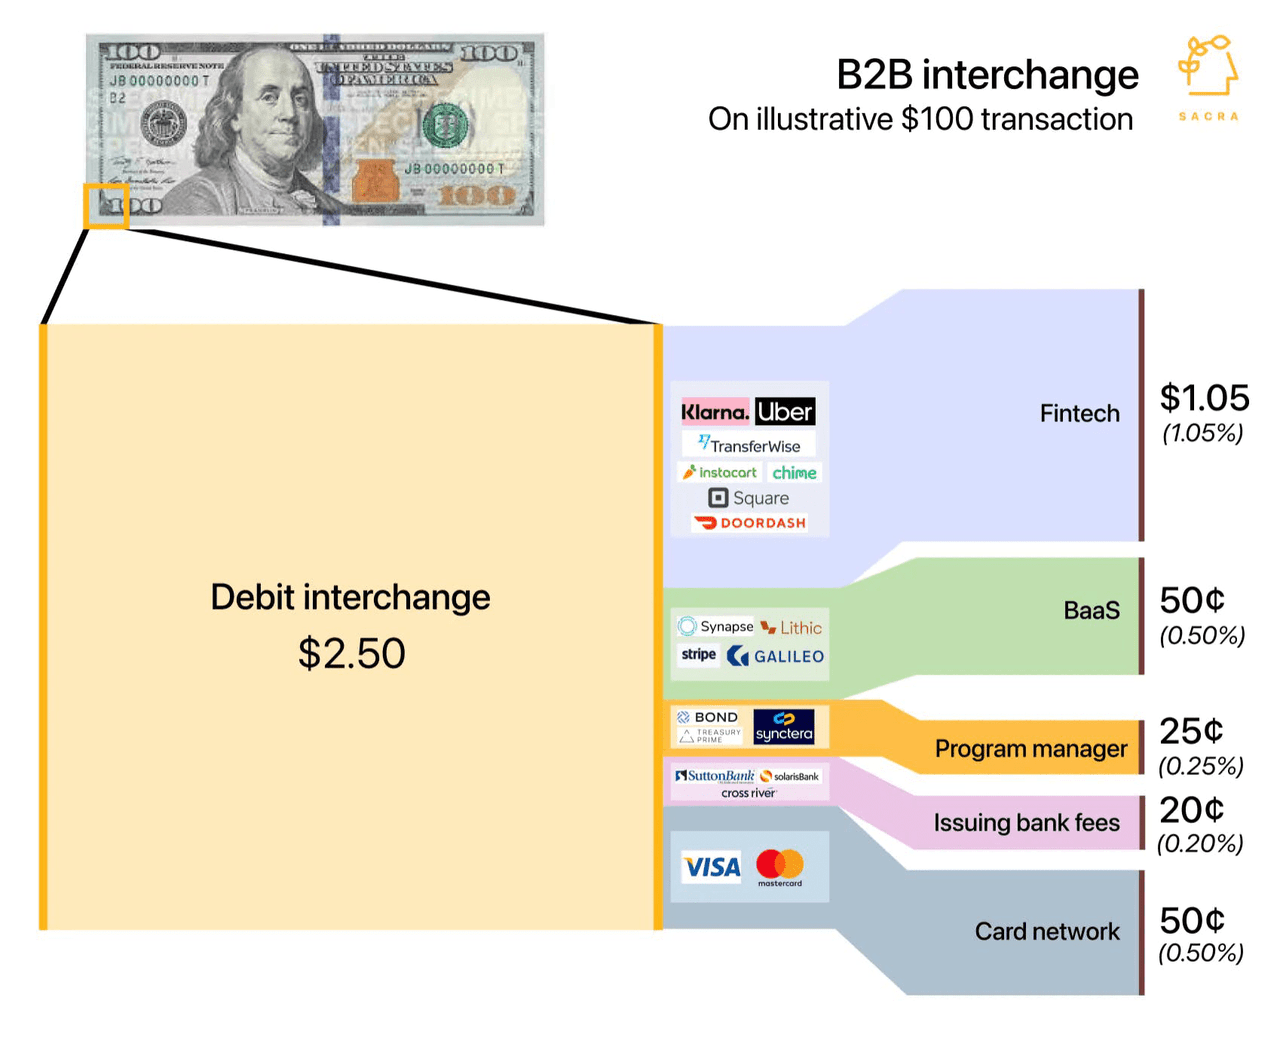 Debit interchange